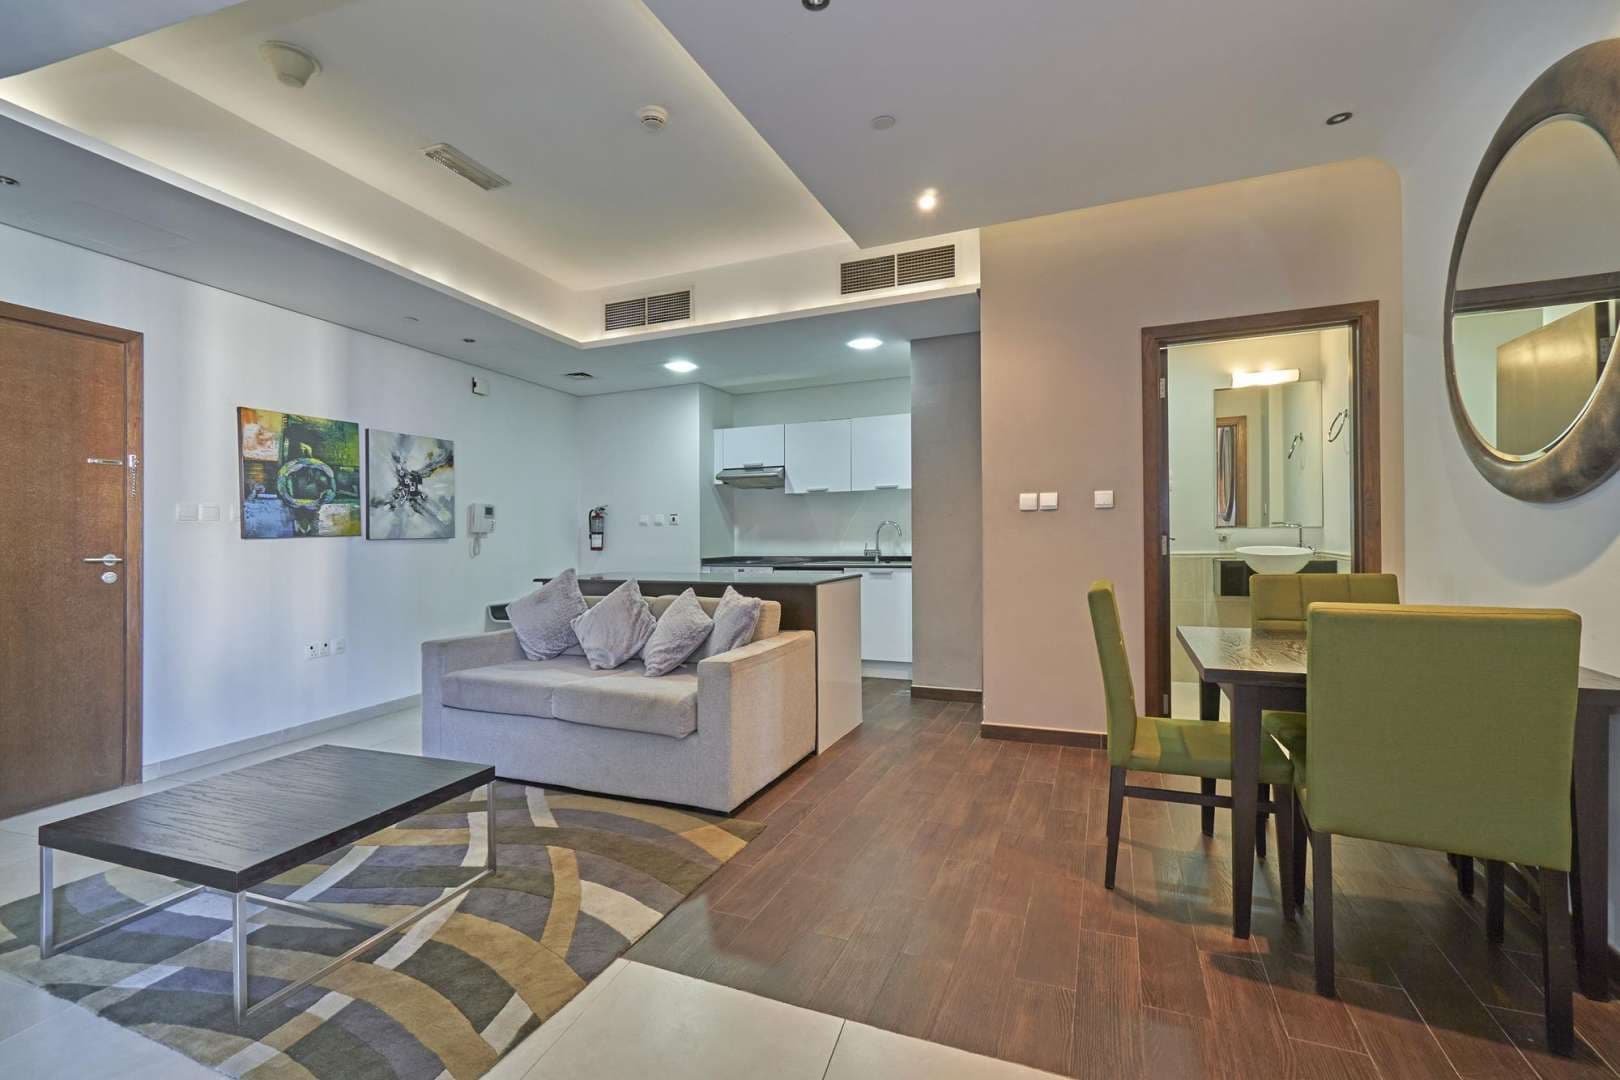 1 Bedroom Apartment For Rent The Matrix Lp05346 161b76546a204f00.jpg